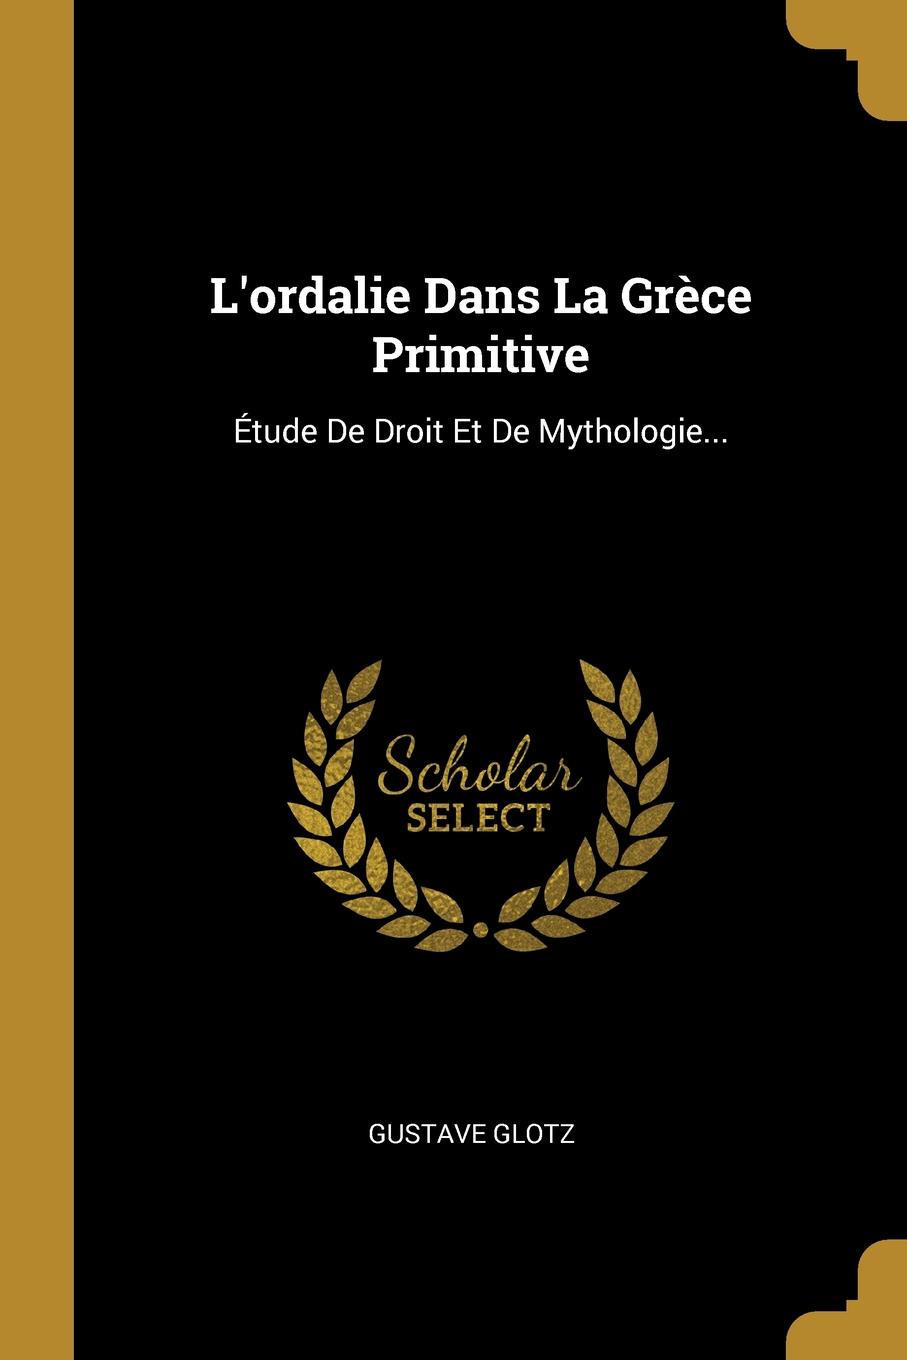 L.ordalie Dans La Grece Primitive. Etude De Droit Et De Mythologie...